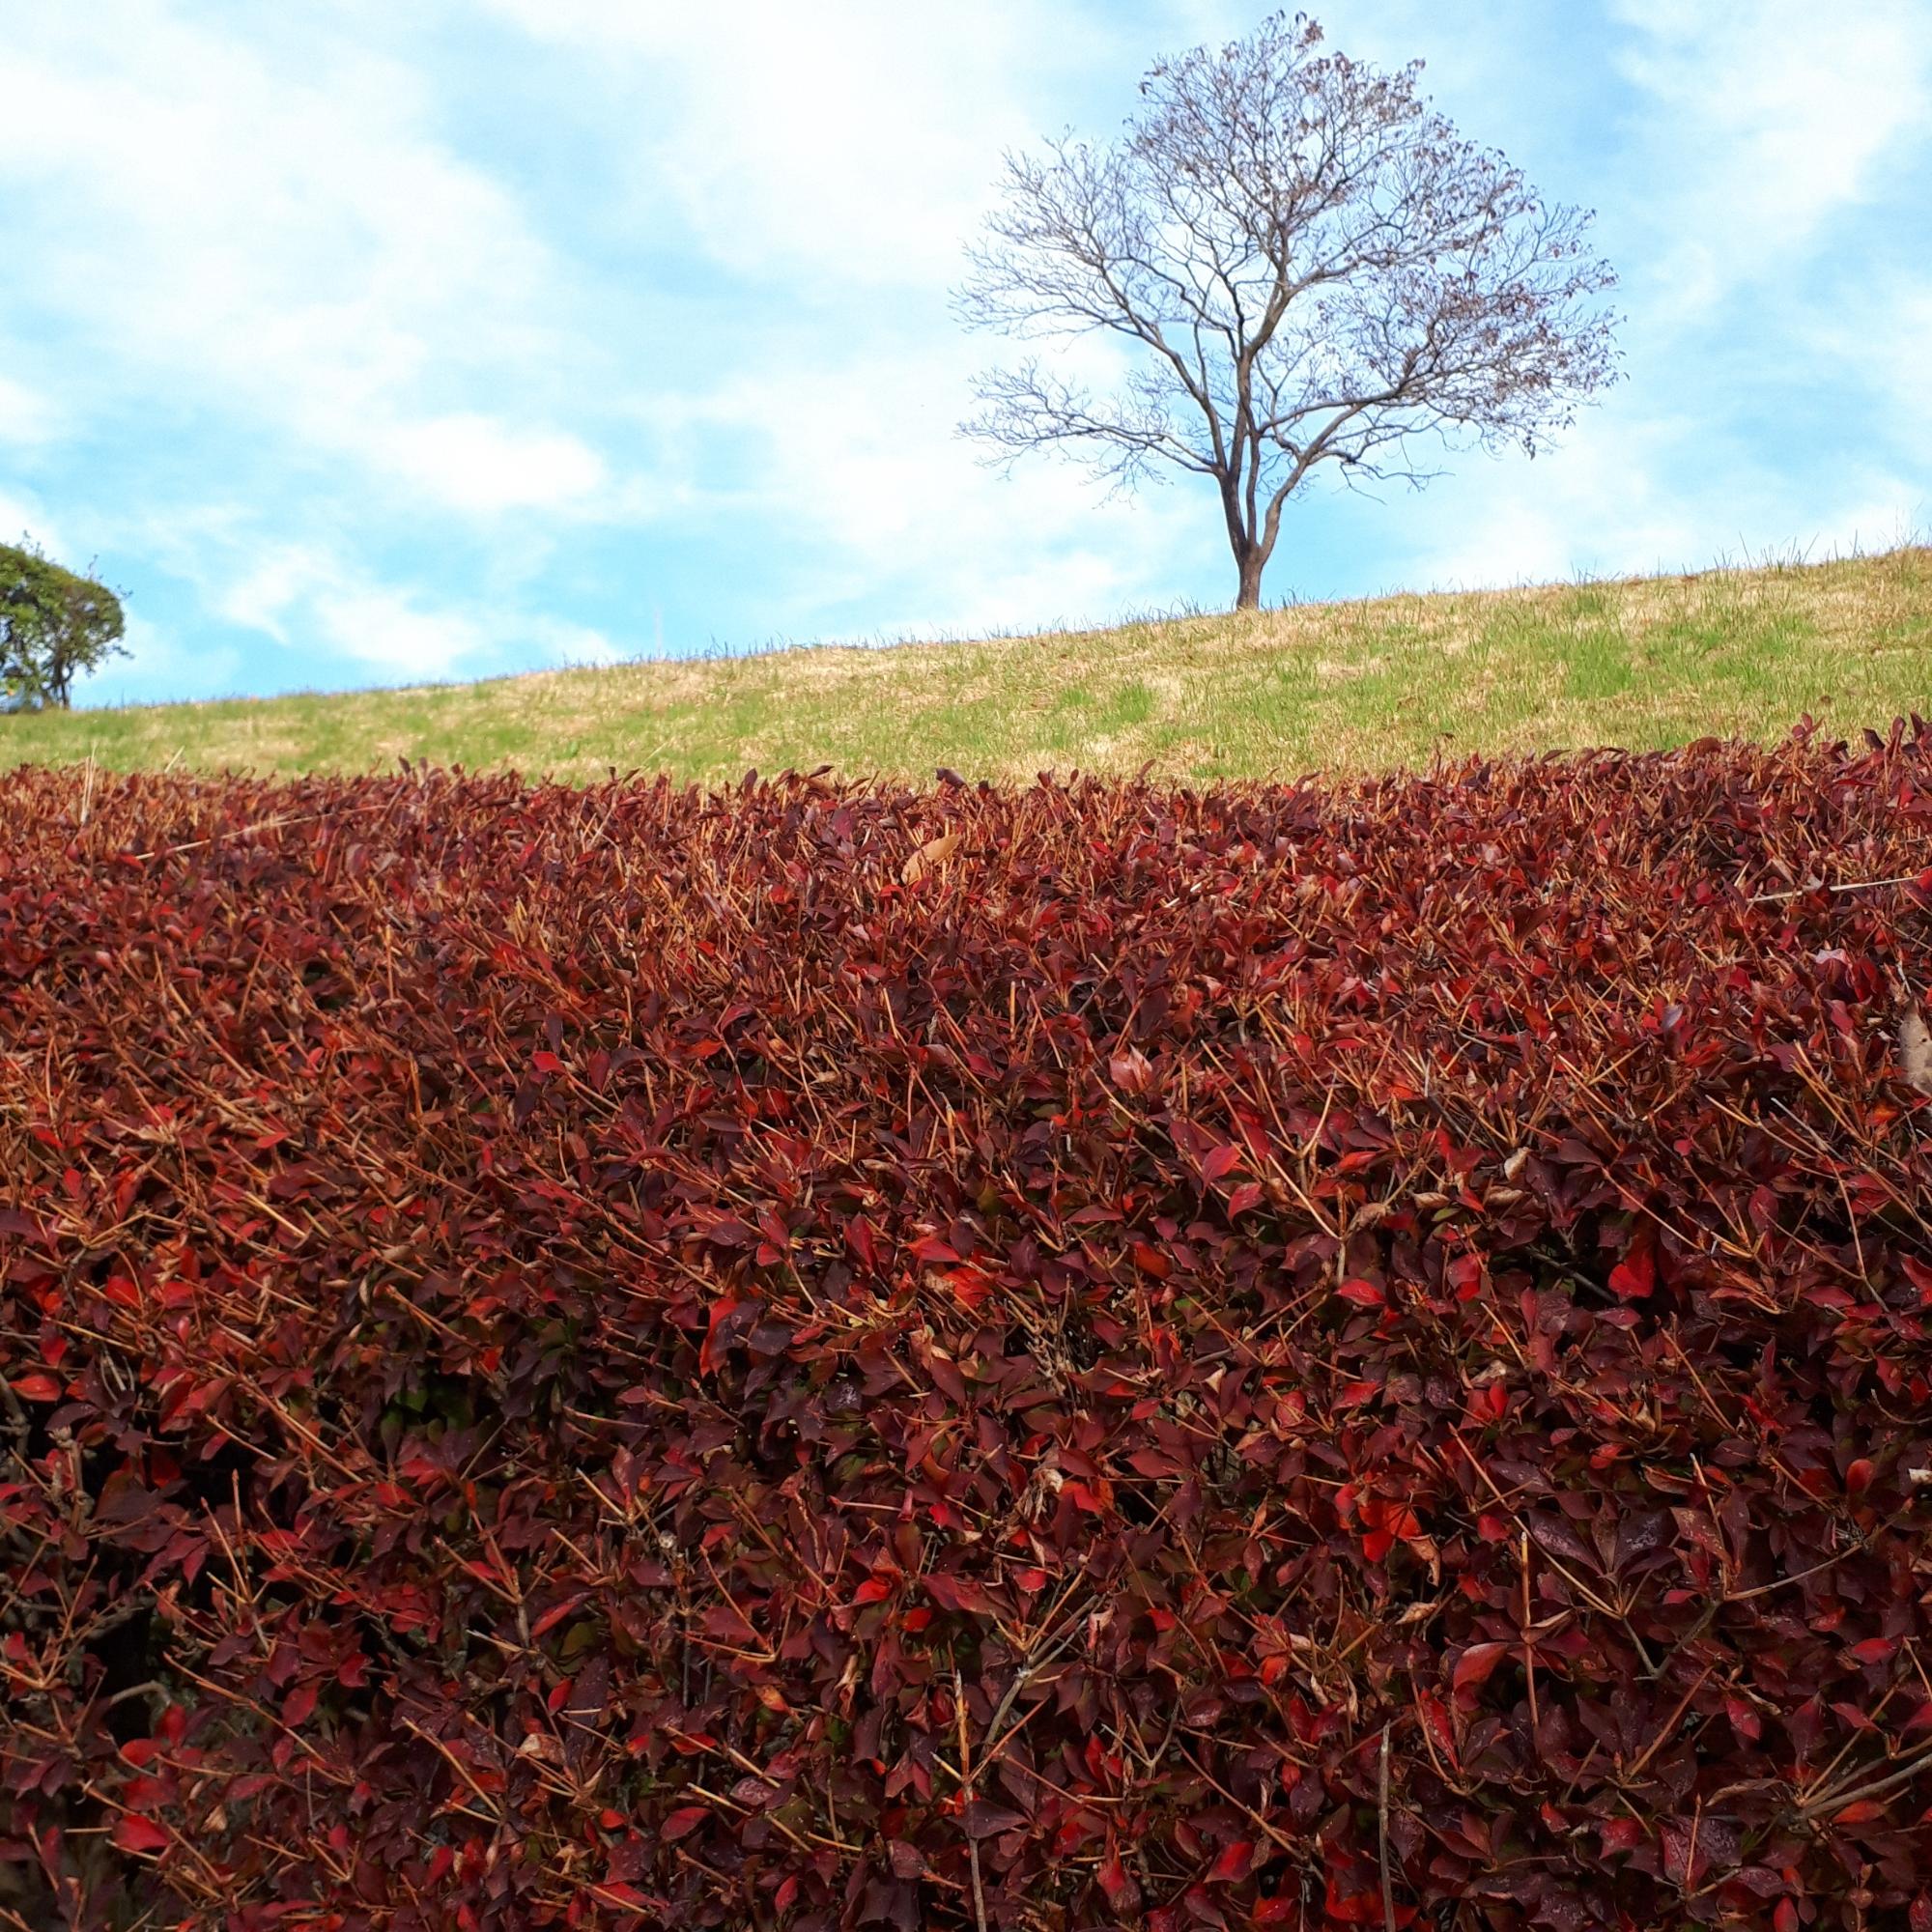 森の里で撮影された真っ赤に紅葉した低木の向こう側に重なる緑の芝と青い空のコントラストが美しい風景